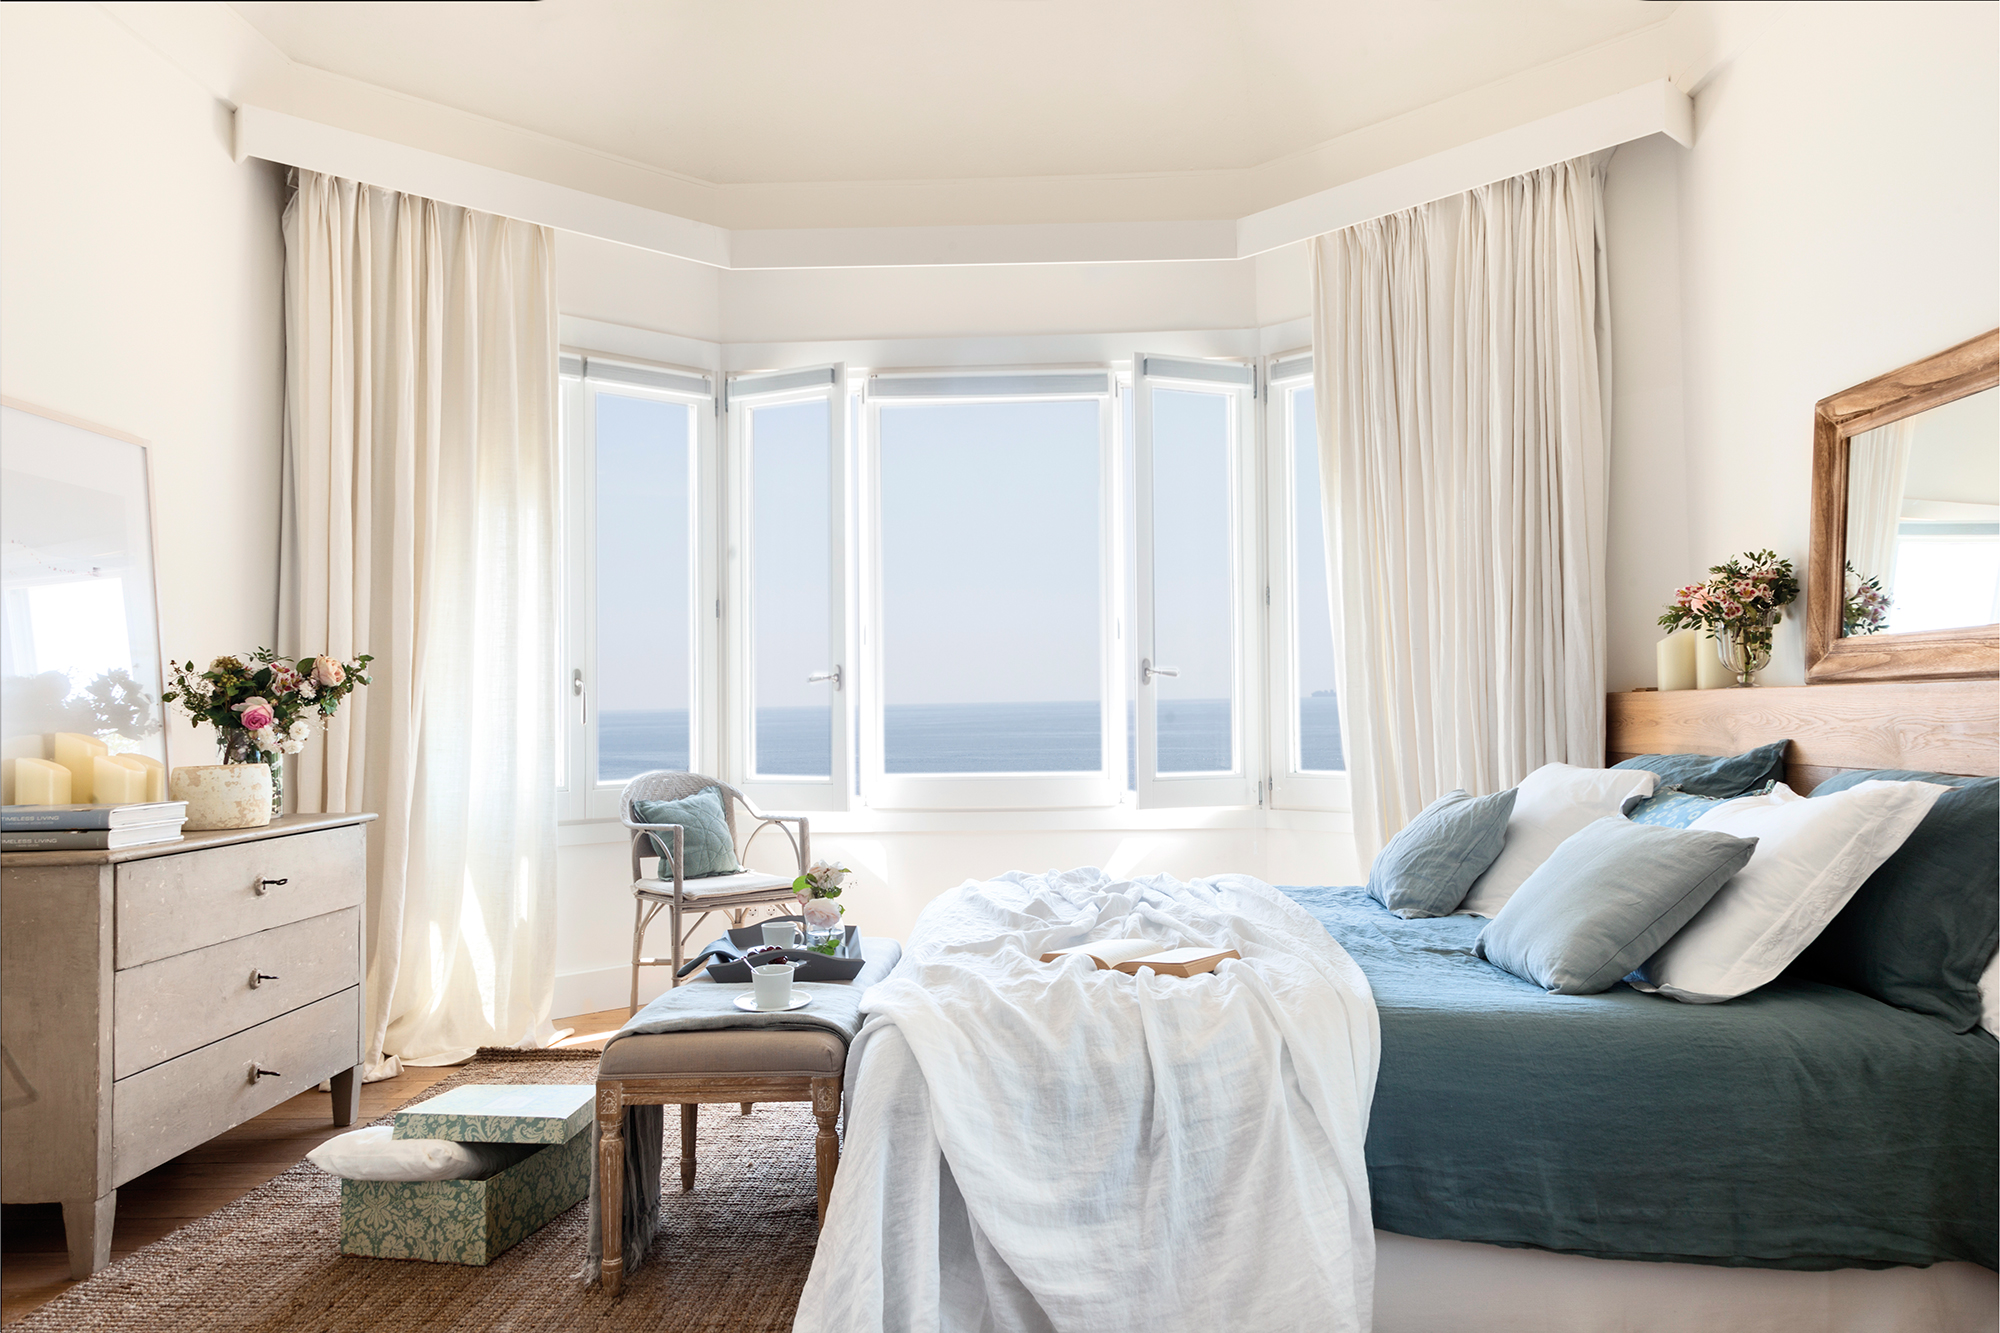 Dormitorio con dormitorio con ropa de cama azul claro, ventanales y cortinas blancas.